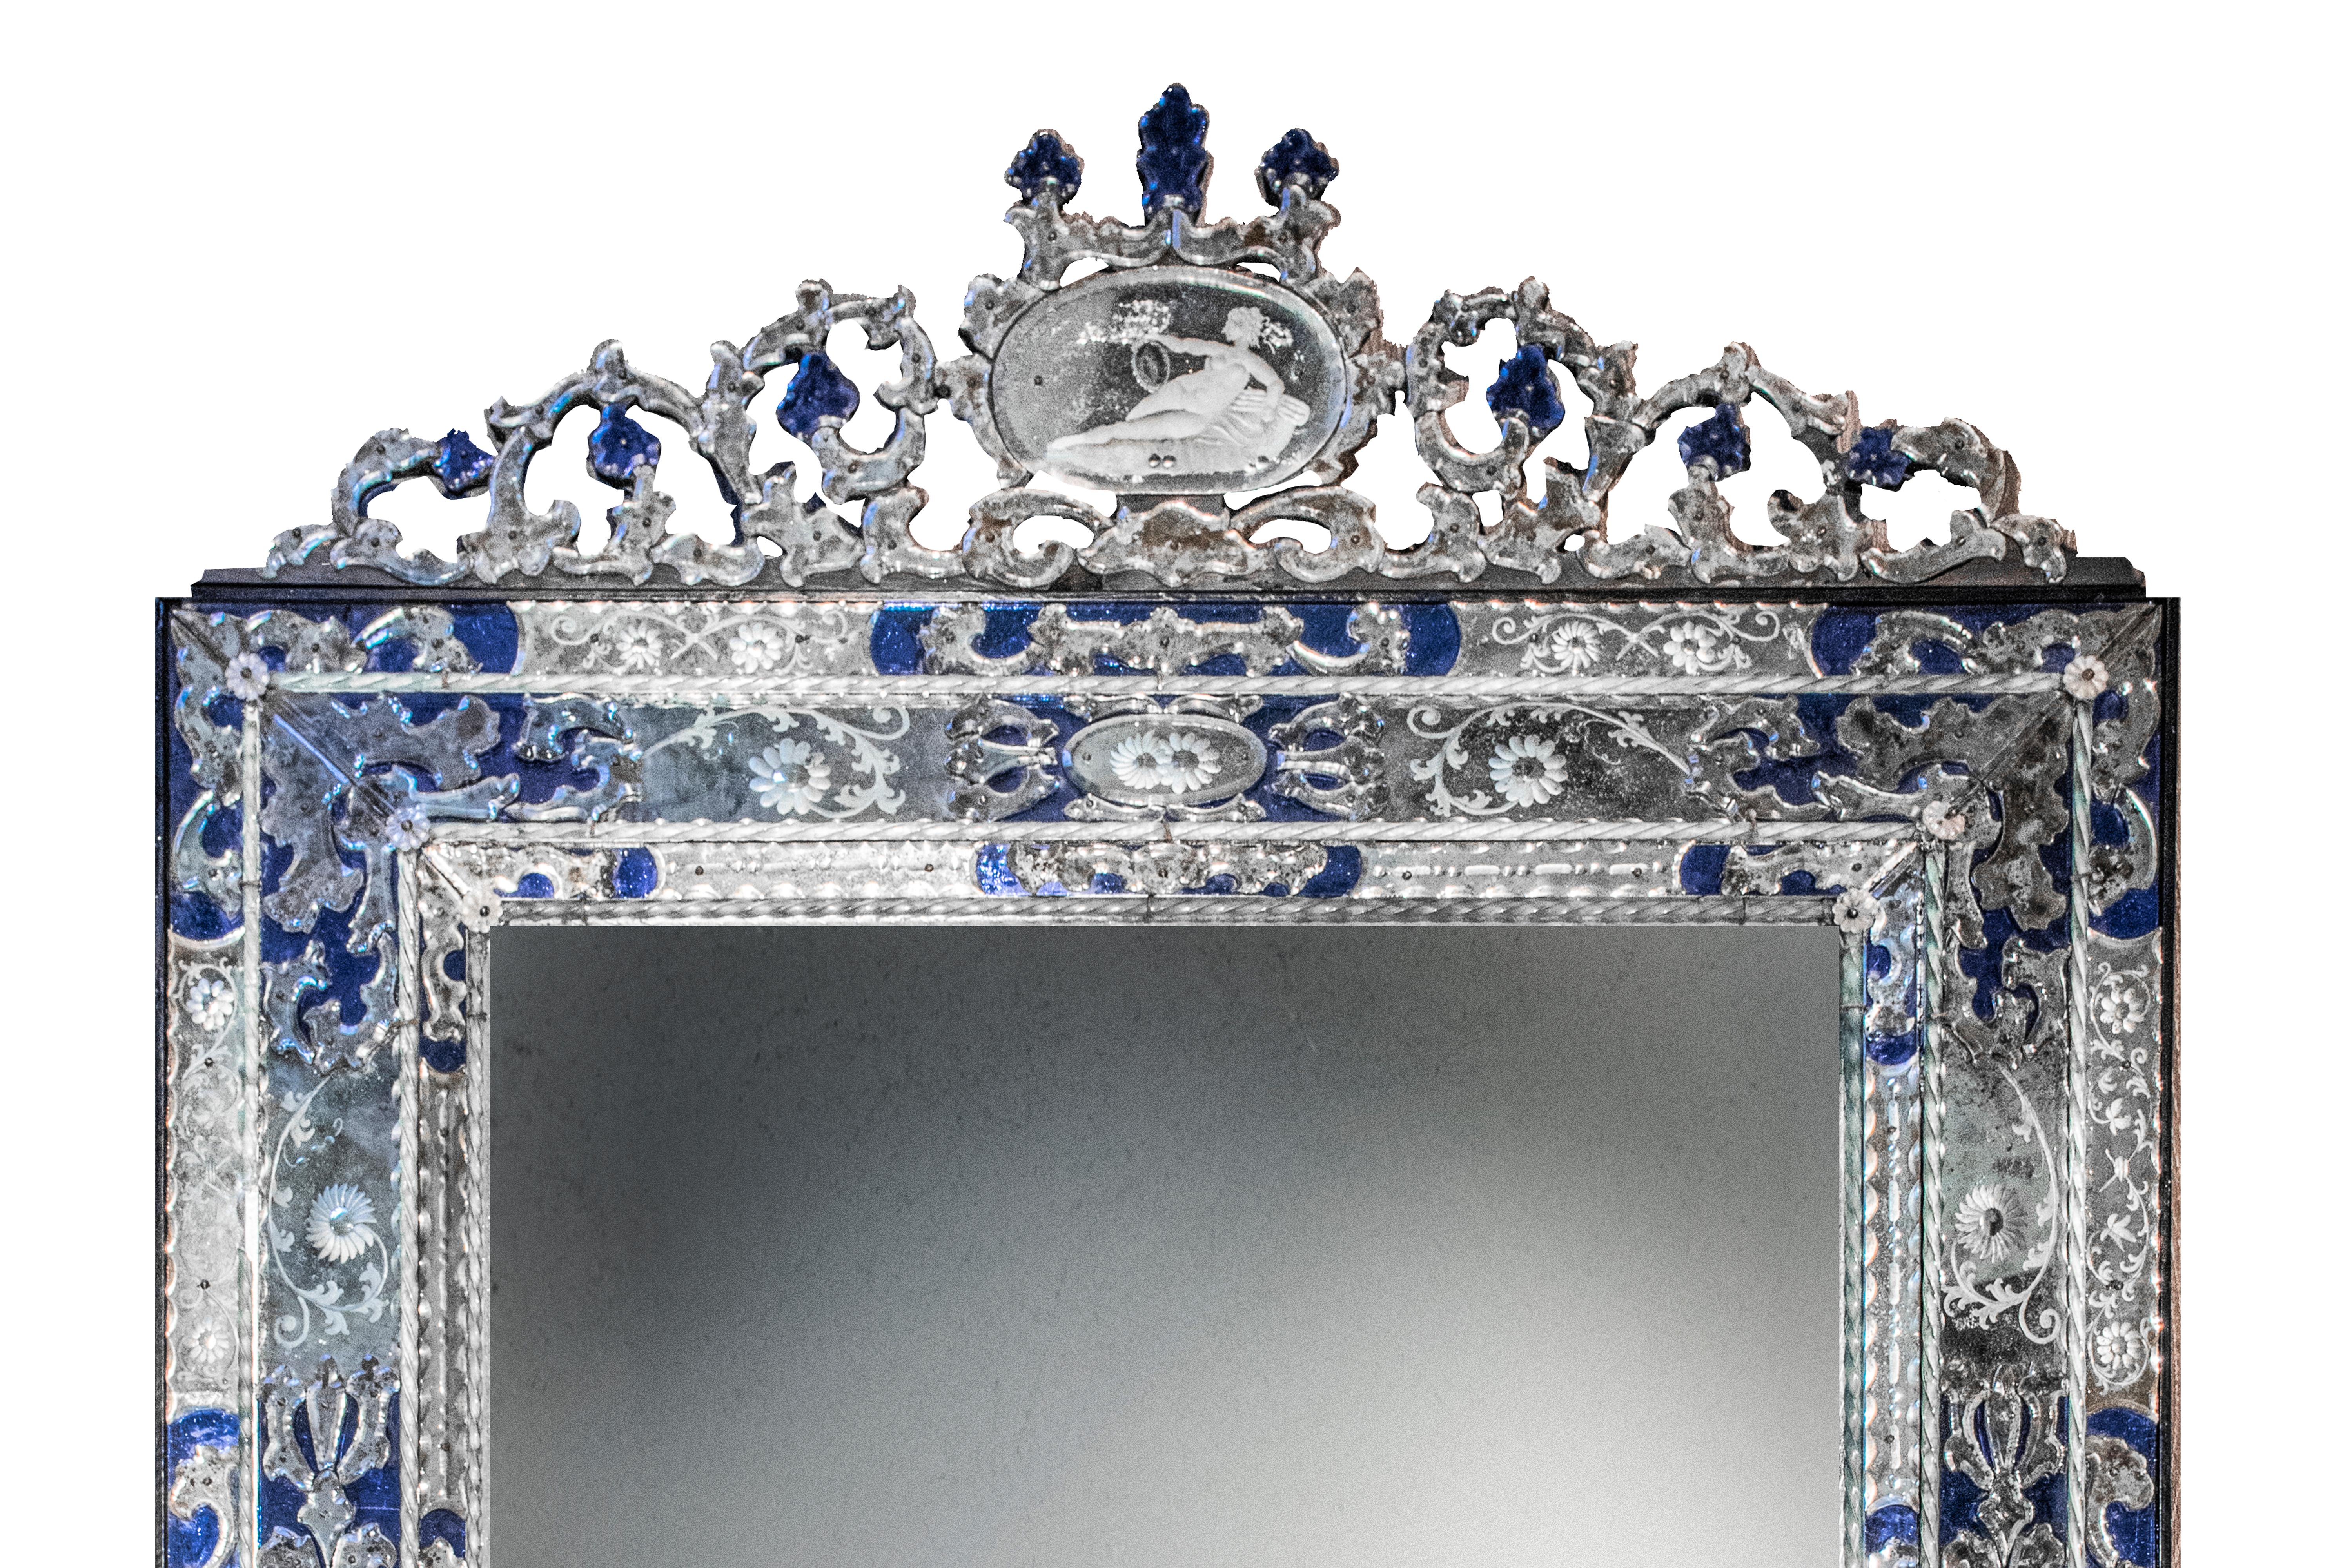 Paire de grands miroirs vénitiens anciens spectaculaires. Montés dans de larges cadres rectangulaires avec des motifs floraux gravés à l'acide et des éléments de recouvrement de couleur bleue, ainsi que des perles de verre de Murano torsadées. Les